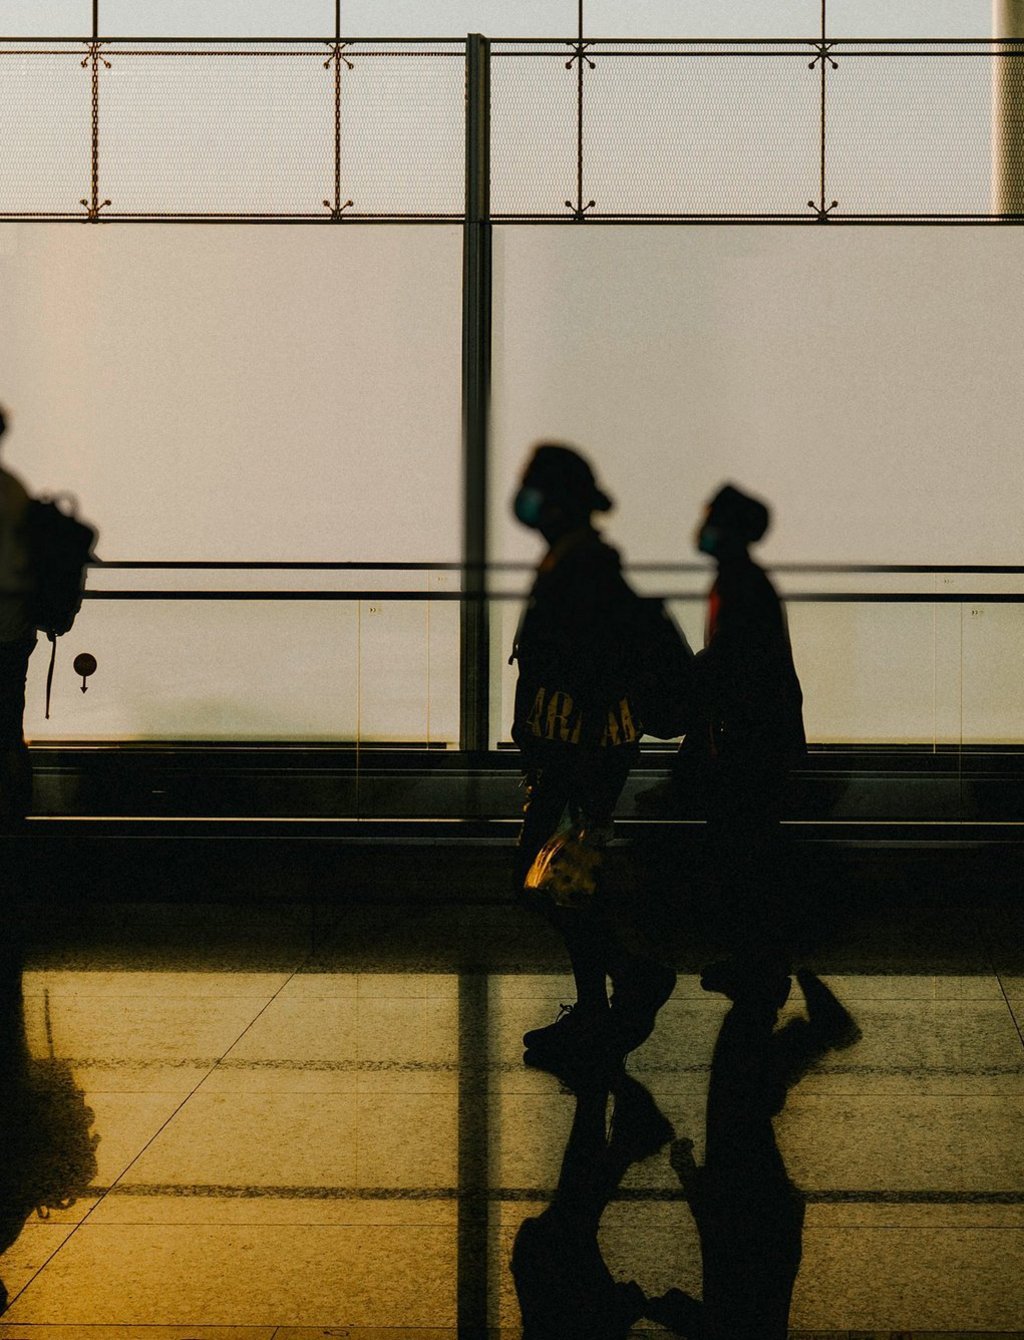 Foto von drei Menschen im Gegenlicht mit Rucksack in einer verglasten Halle, die in eine Richtung laufen.